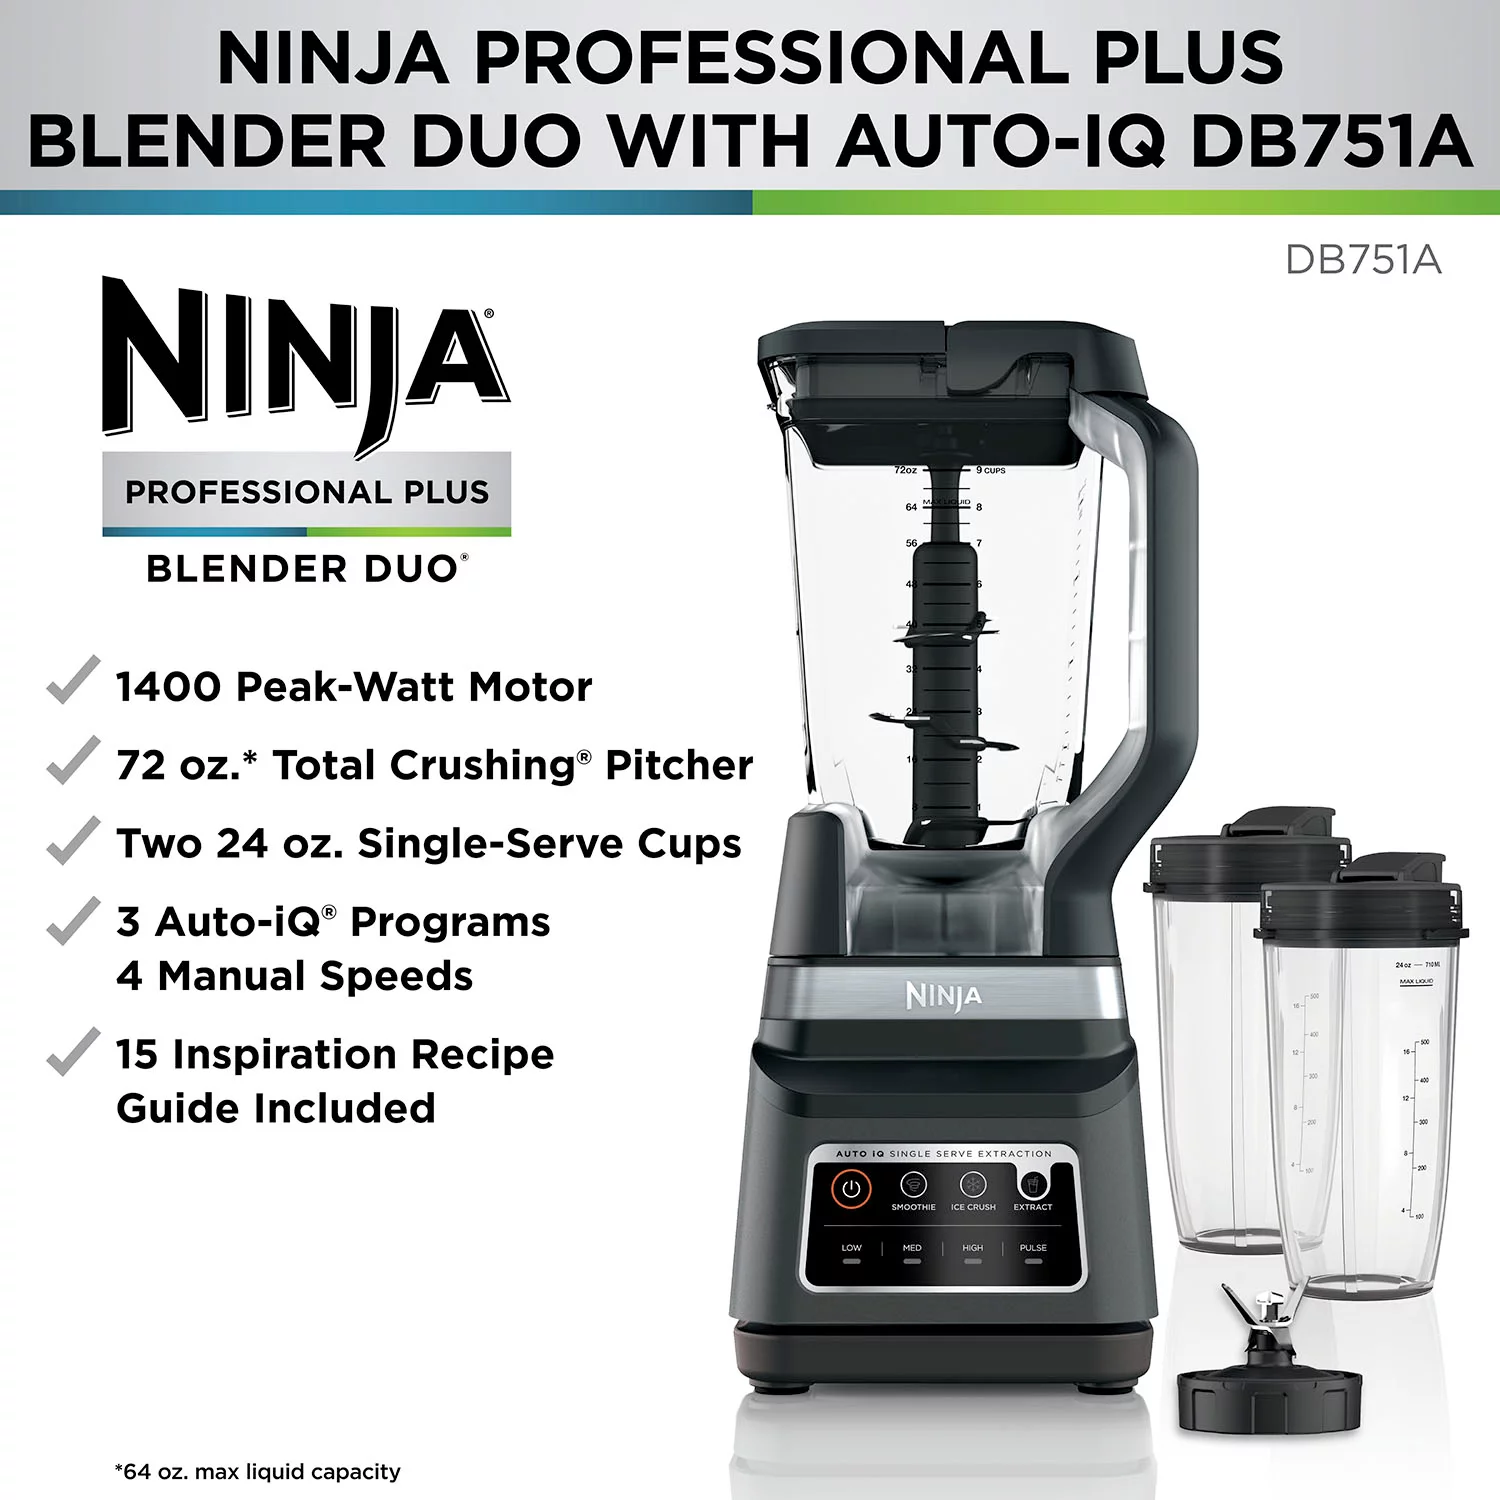 Ninja BN701 Professional Plus 1400W Auto-iQ 72 Oz Blender